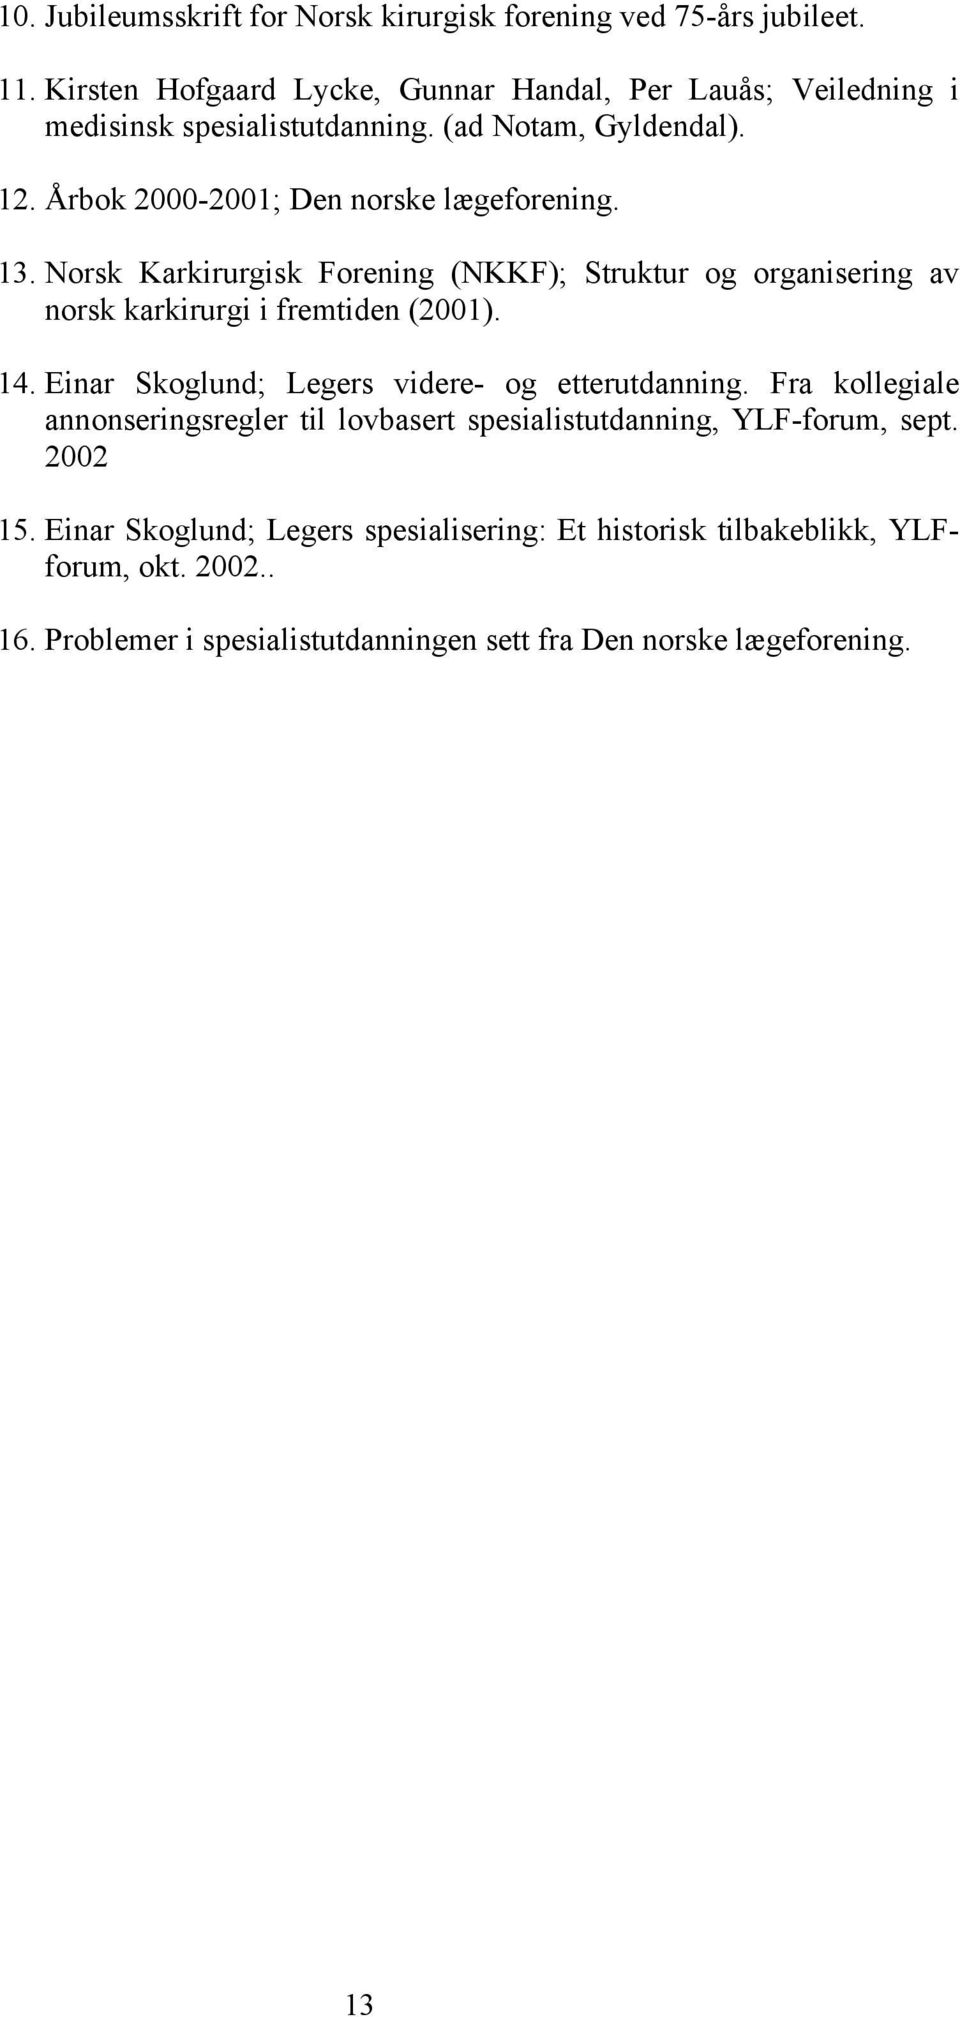 13. Norsk Karkirurgisk Forening (NKKF); Struktur og organisering av norsk karkirurgi i fremtiden (2001). 14. Einar Skoglund; Legers videre- og etterutdanning.